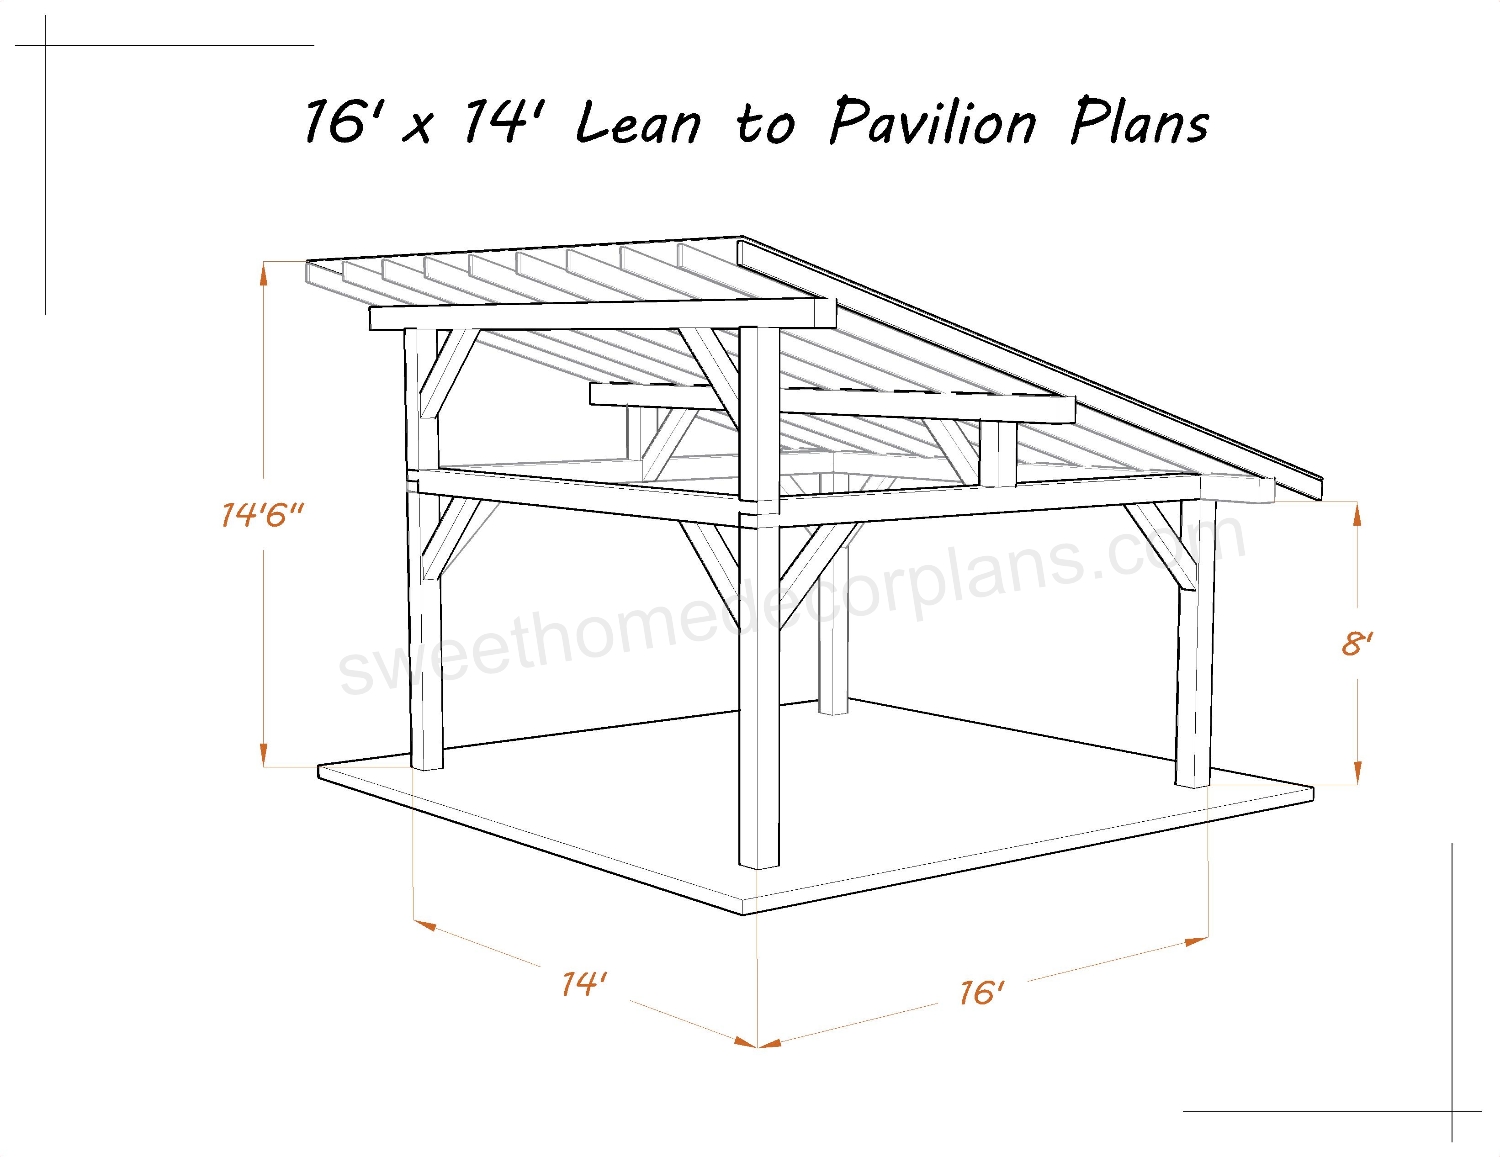 6-x-14-lean-to-pavilion-plans-wooden-gazebo-carport-